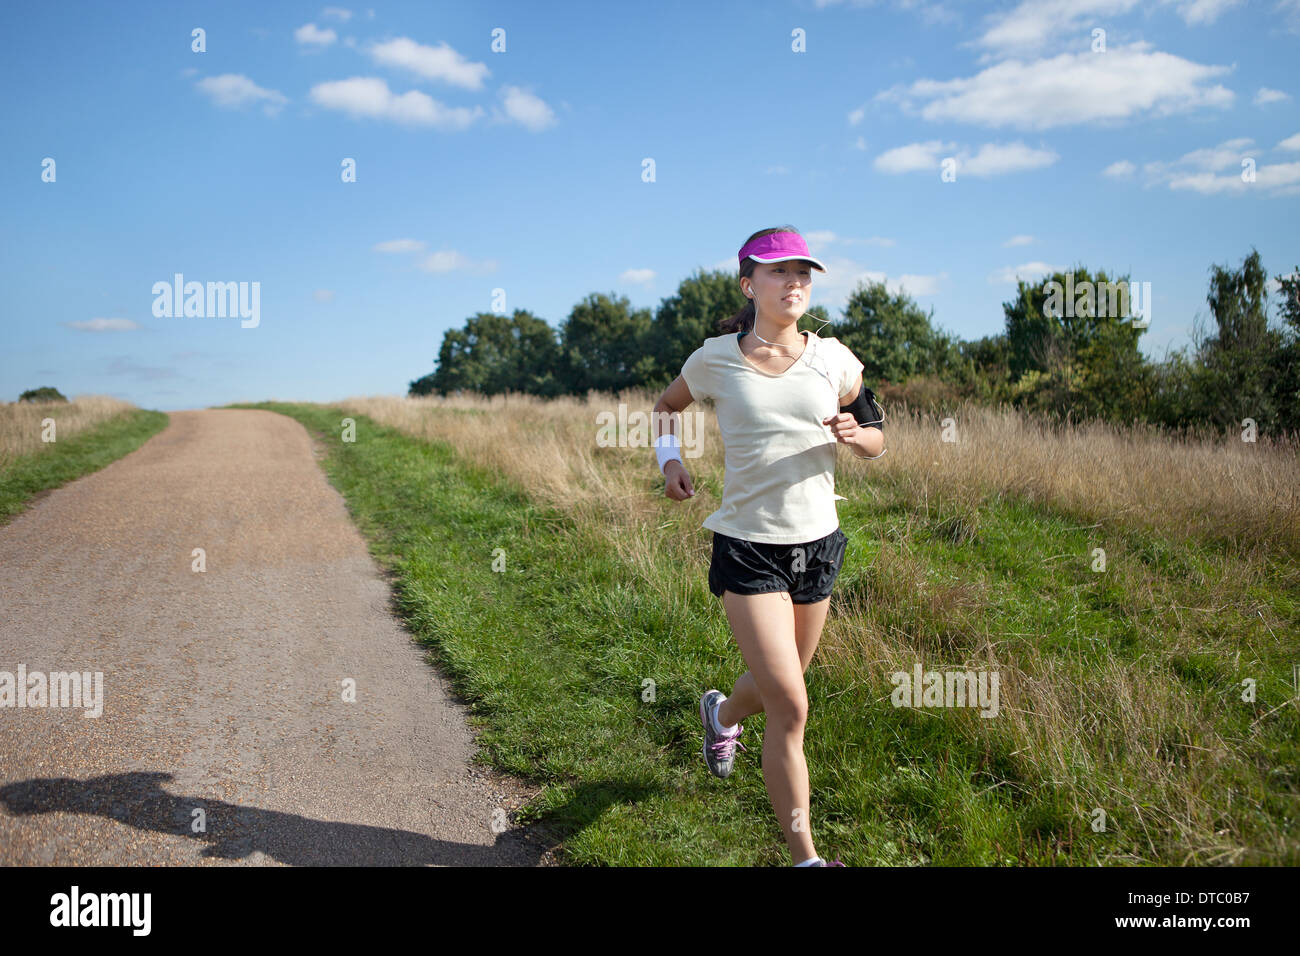 Young female runner running alongside dirt track Stock Photo